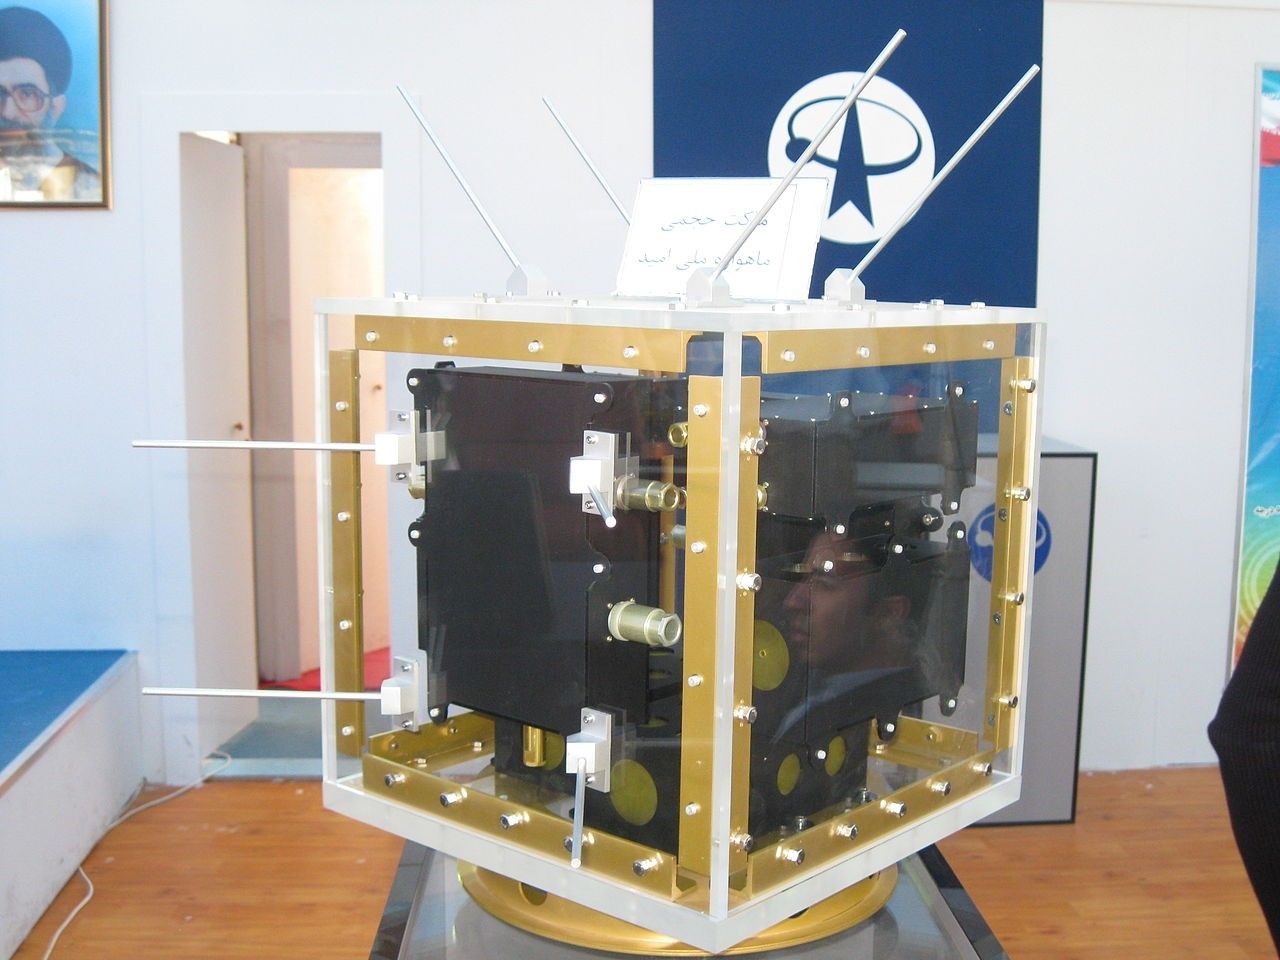 omid - drugi irański satelita, który trafił na orbitę w 2009 roku, fot. Mardetanha/Wkimedia, CC BY-SA 3.0